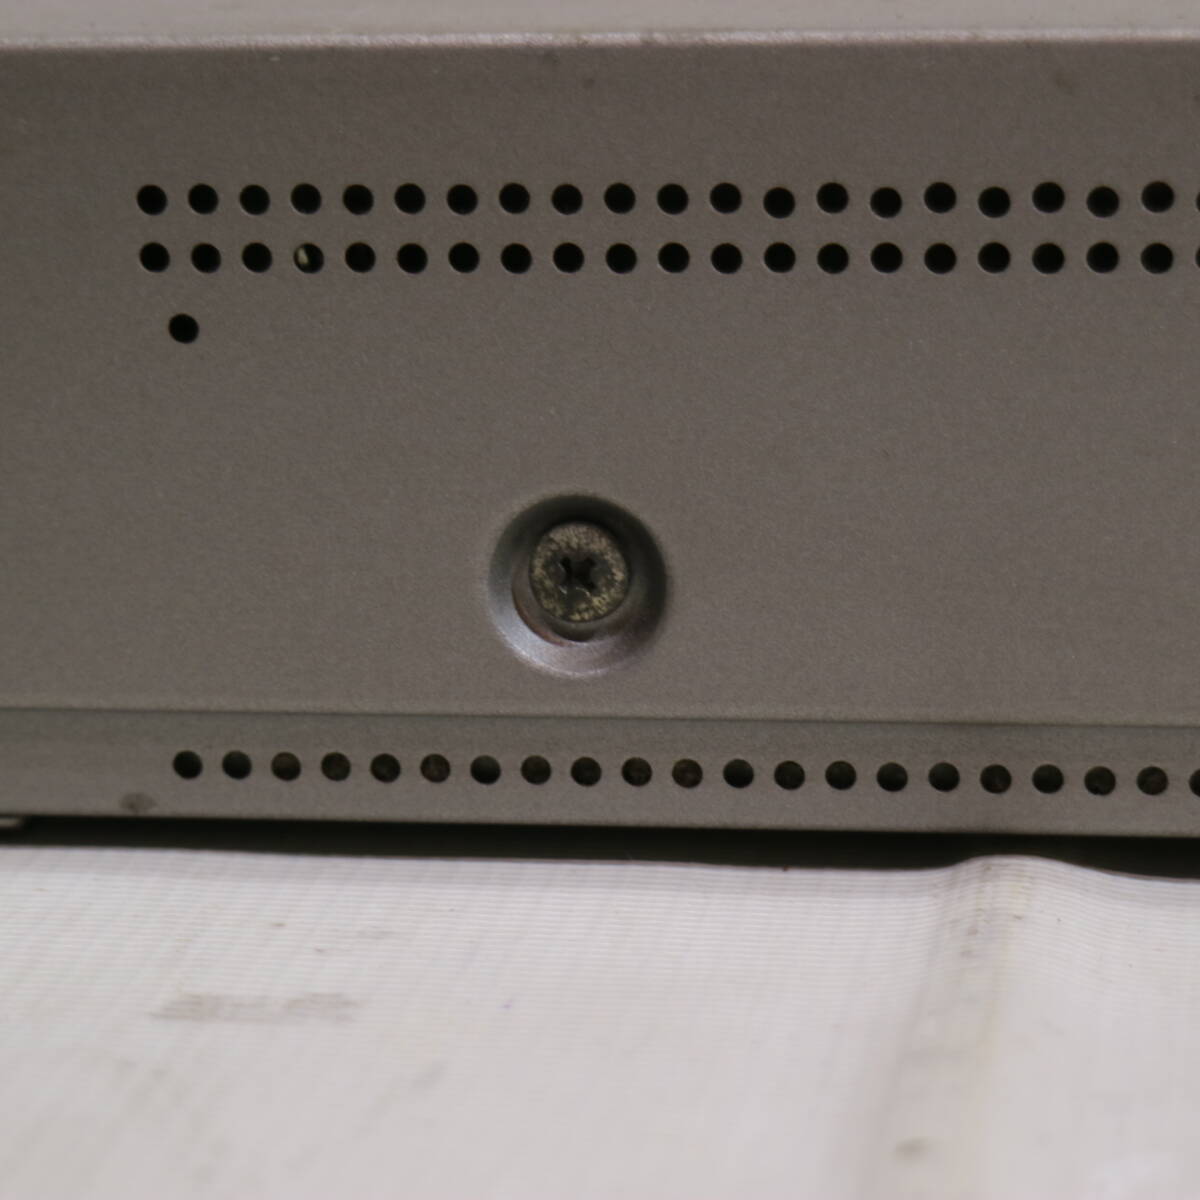 通電確認済み 08年製 SHARP シャープ AQUOS DVDレコーダー DV-AC82 ハイビジョン デジタル HDDレコーダー BCASカード付 250GB _画像7